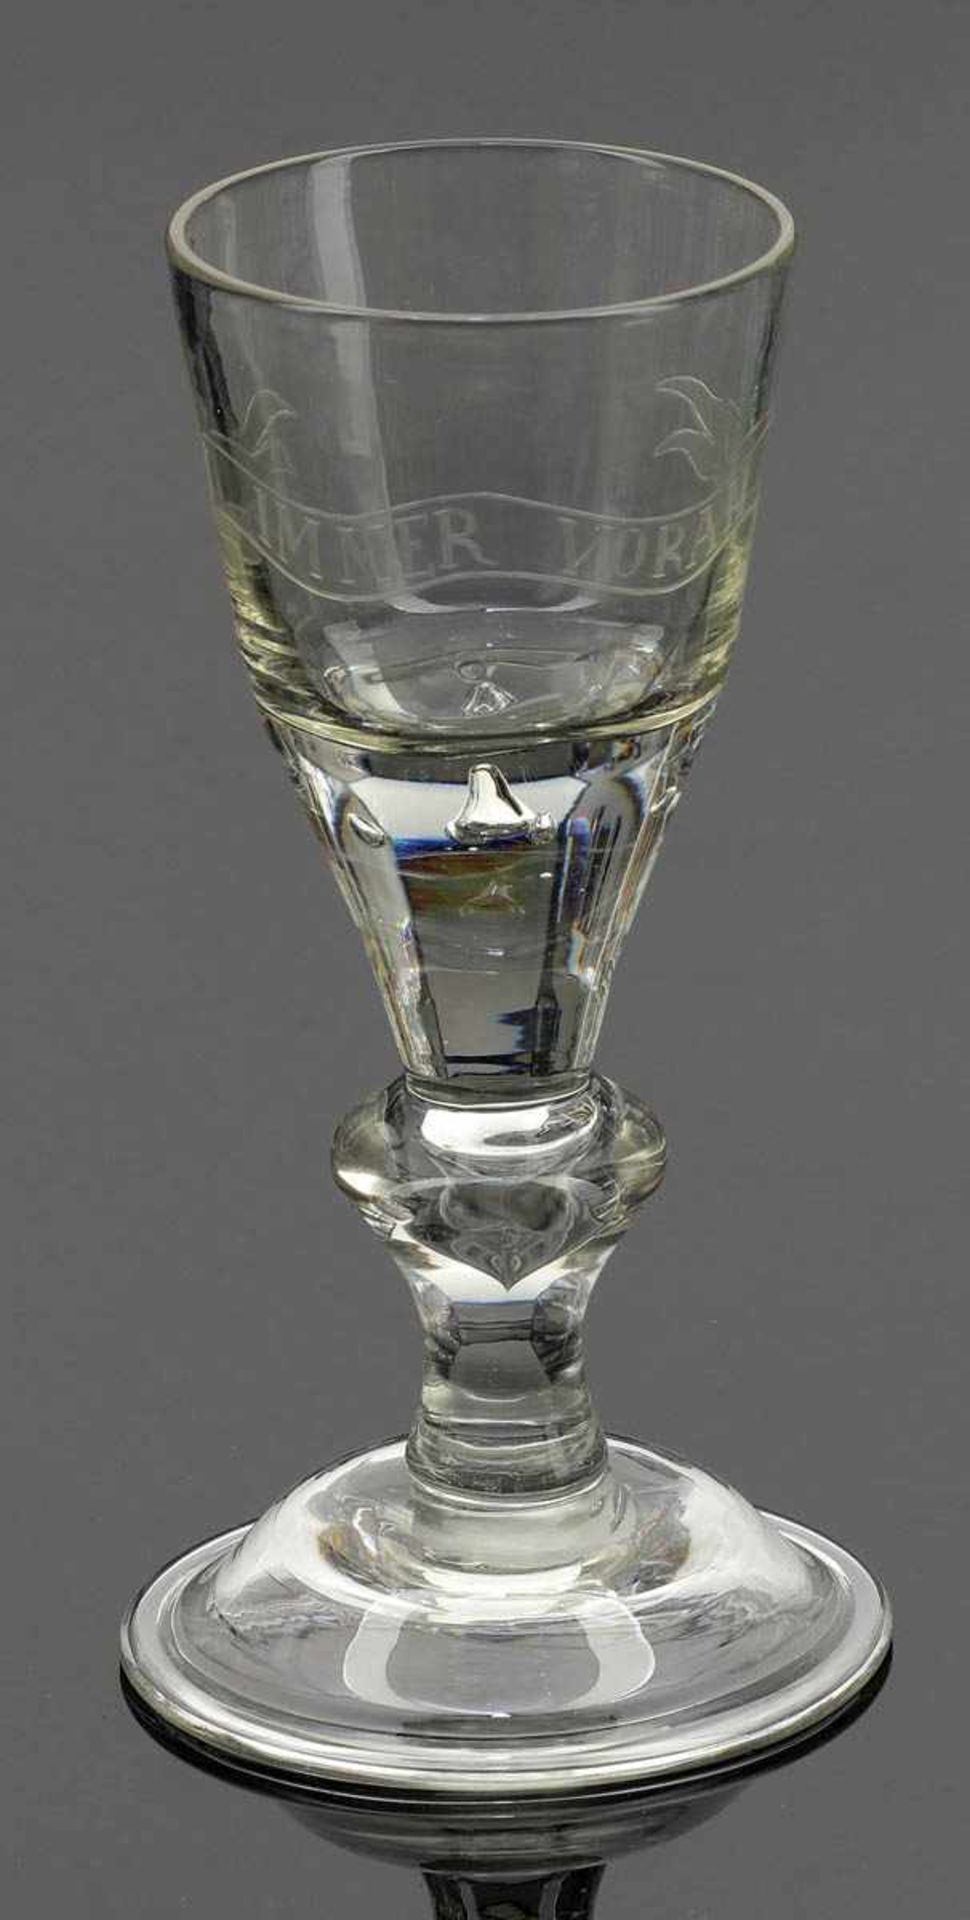 Kelchglas mit Devise Lauenstein, 2. Hälfte 18. Jahrhundert. - Immer voran - Farbloses Glas.